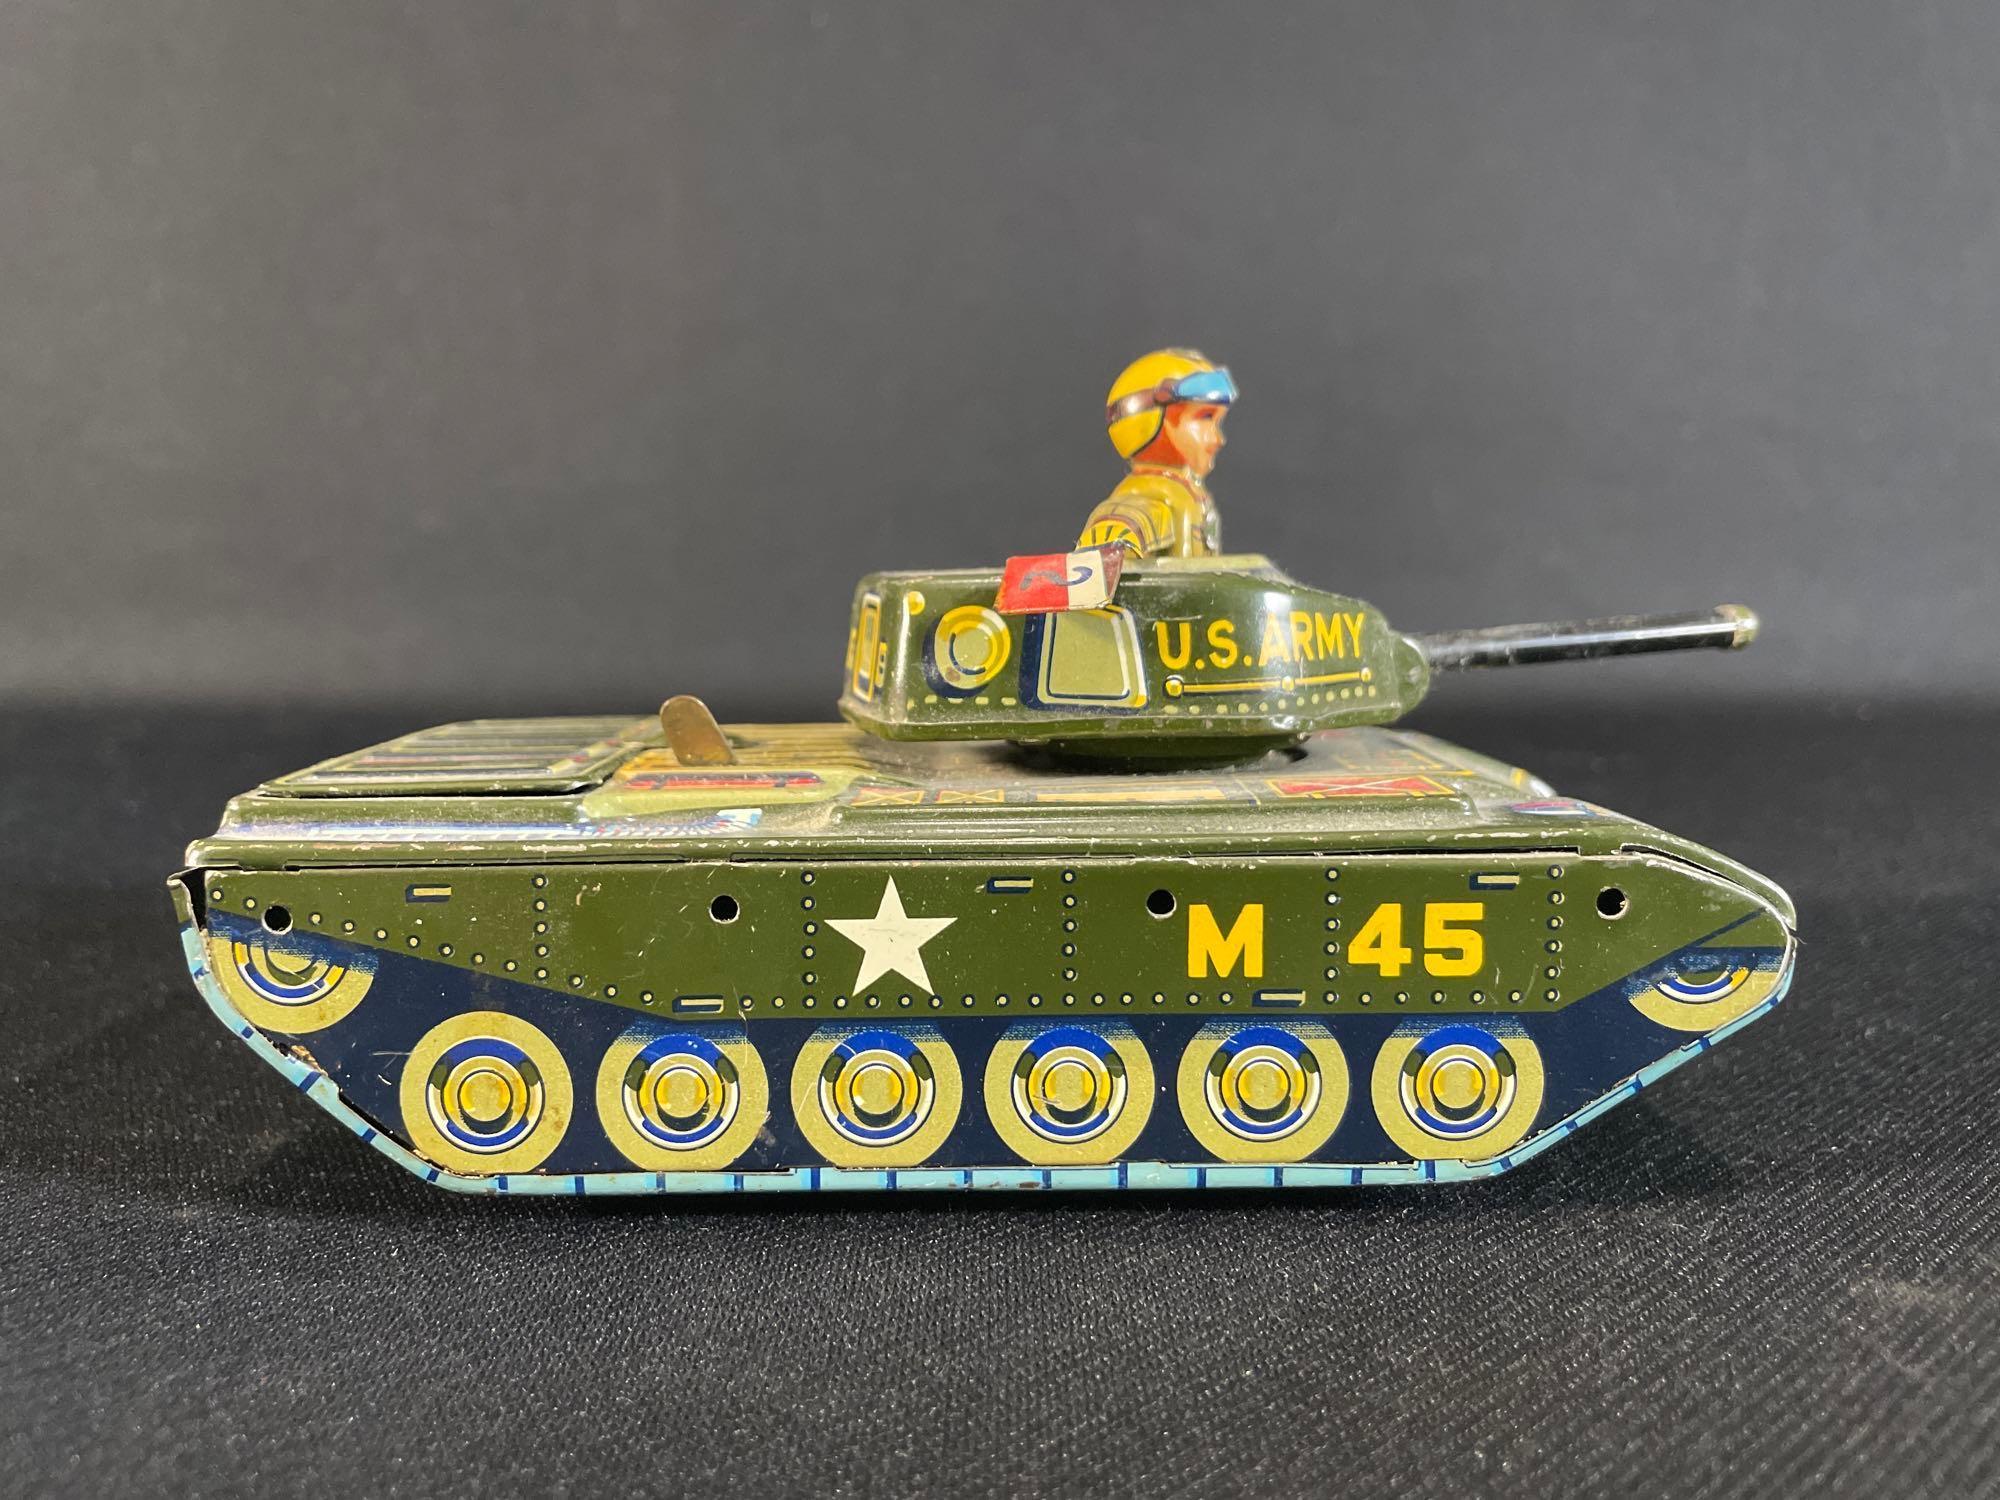 Yonezawa U.S. Army M45 Tin Litho Battery Operated Tank